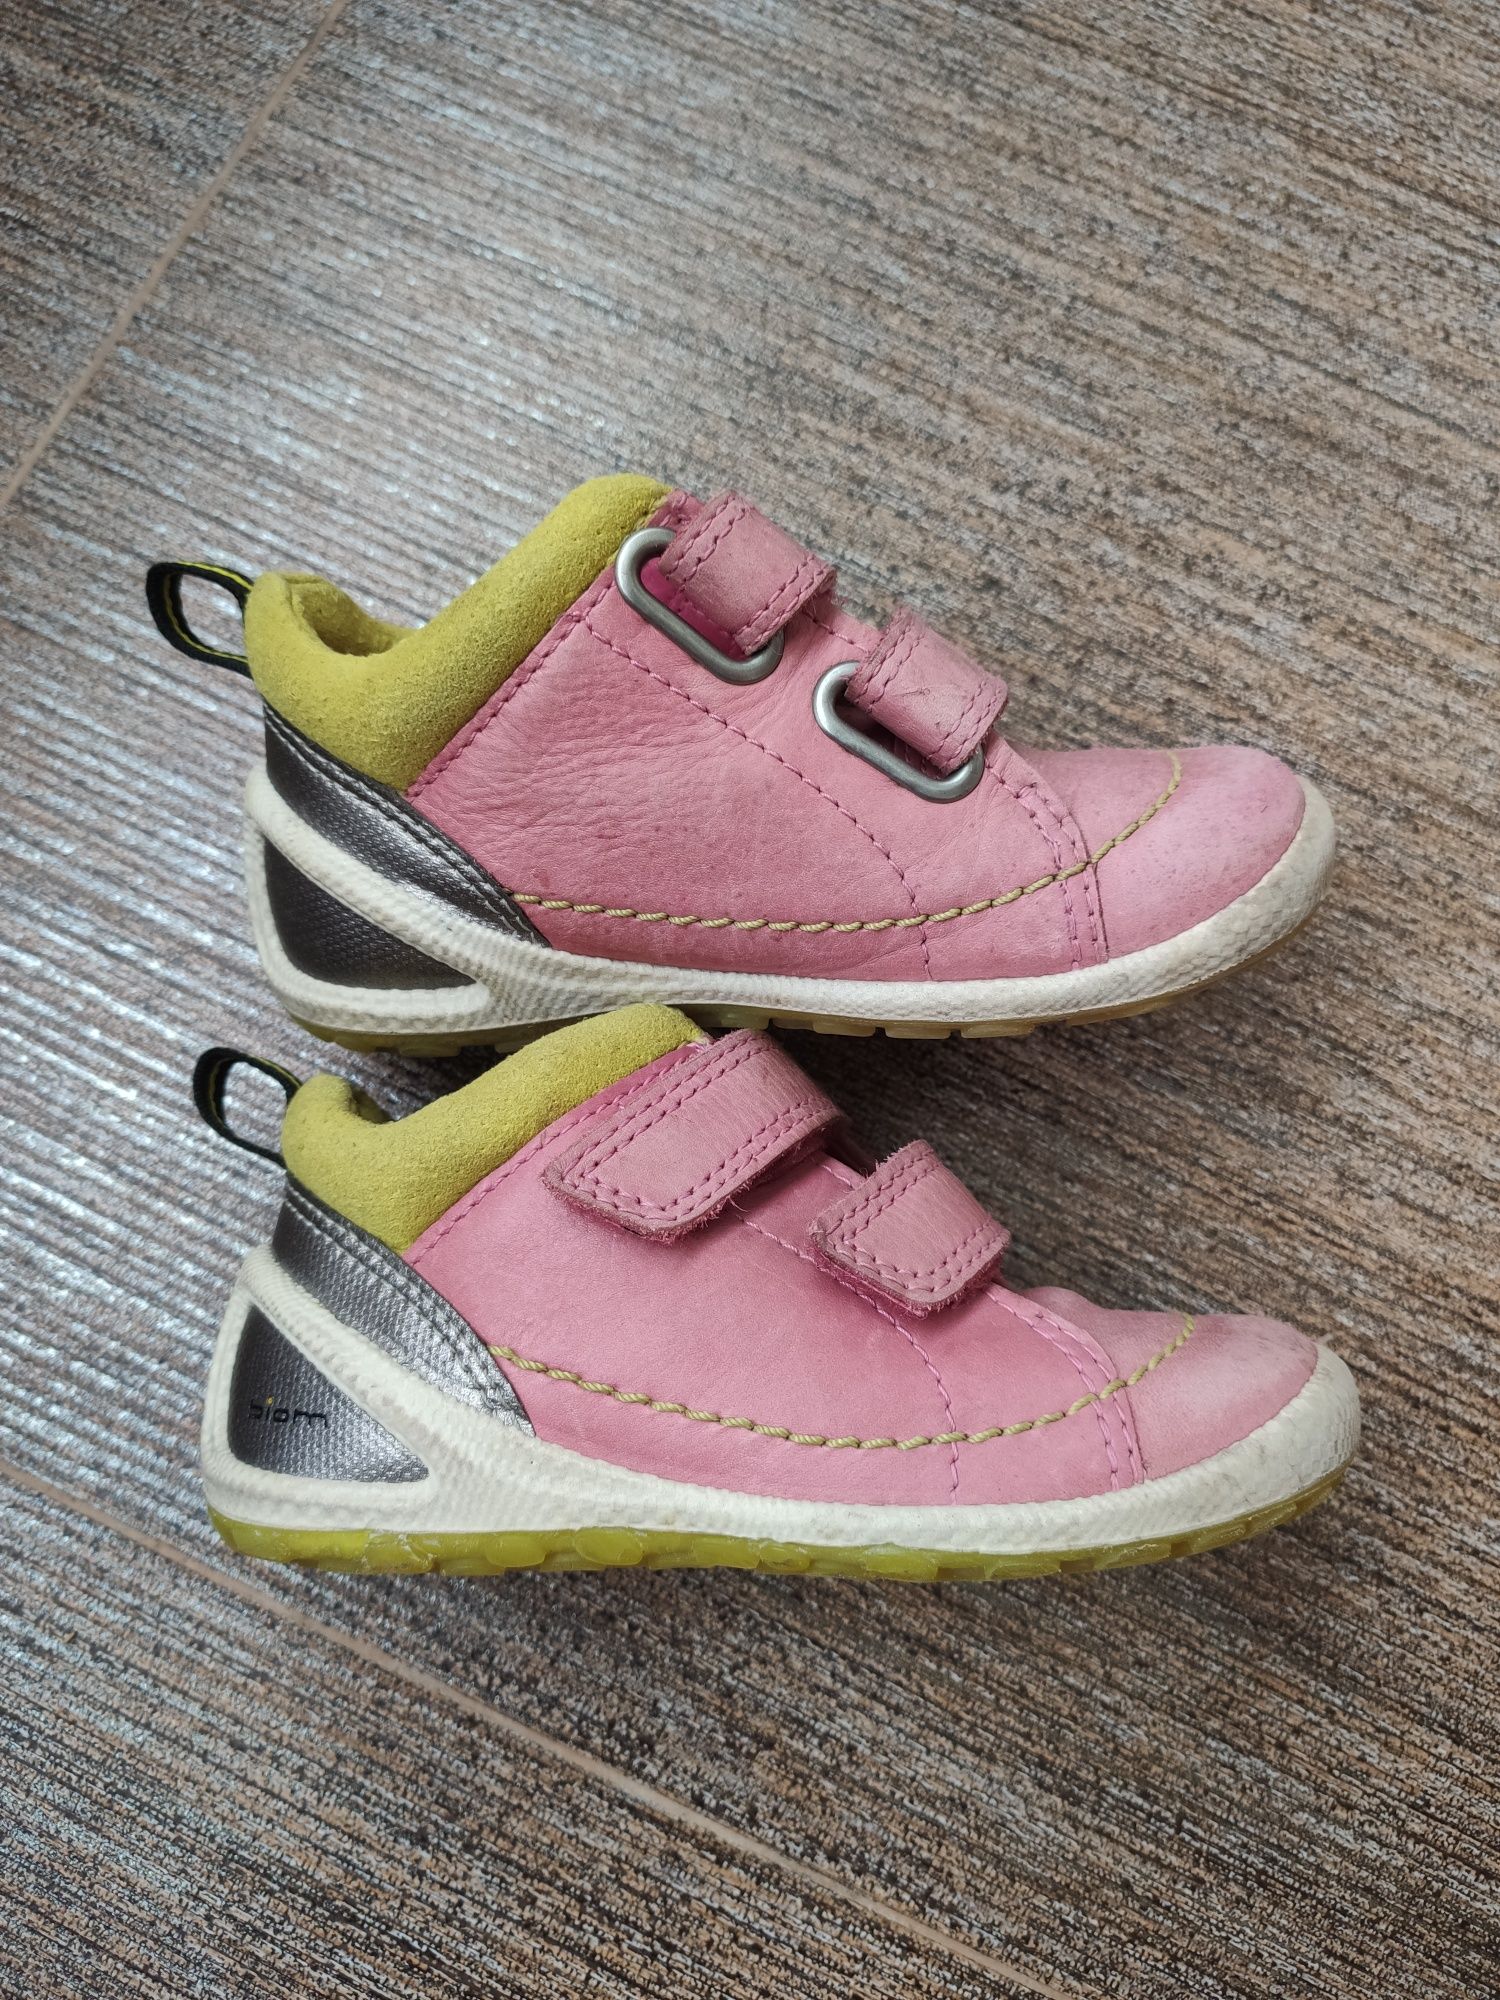 Кроссовки ECCO детские, ботинки демисезонные, полуботинки, туфли